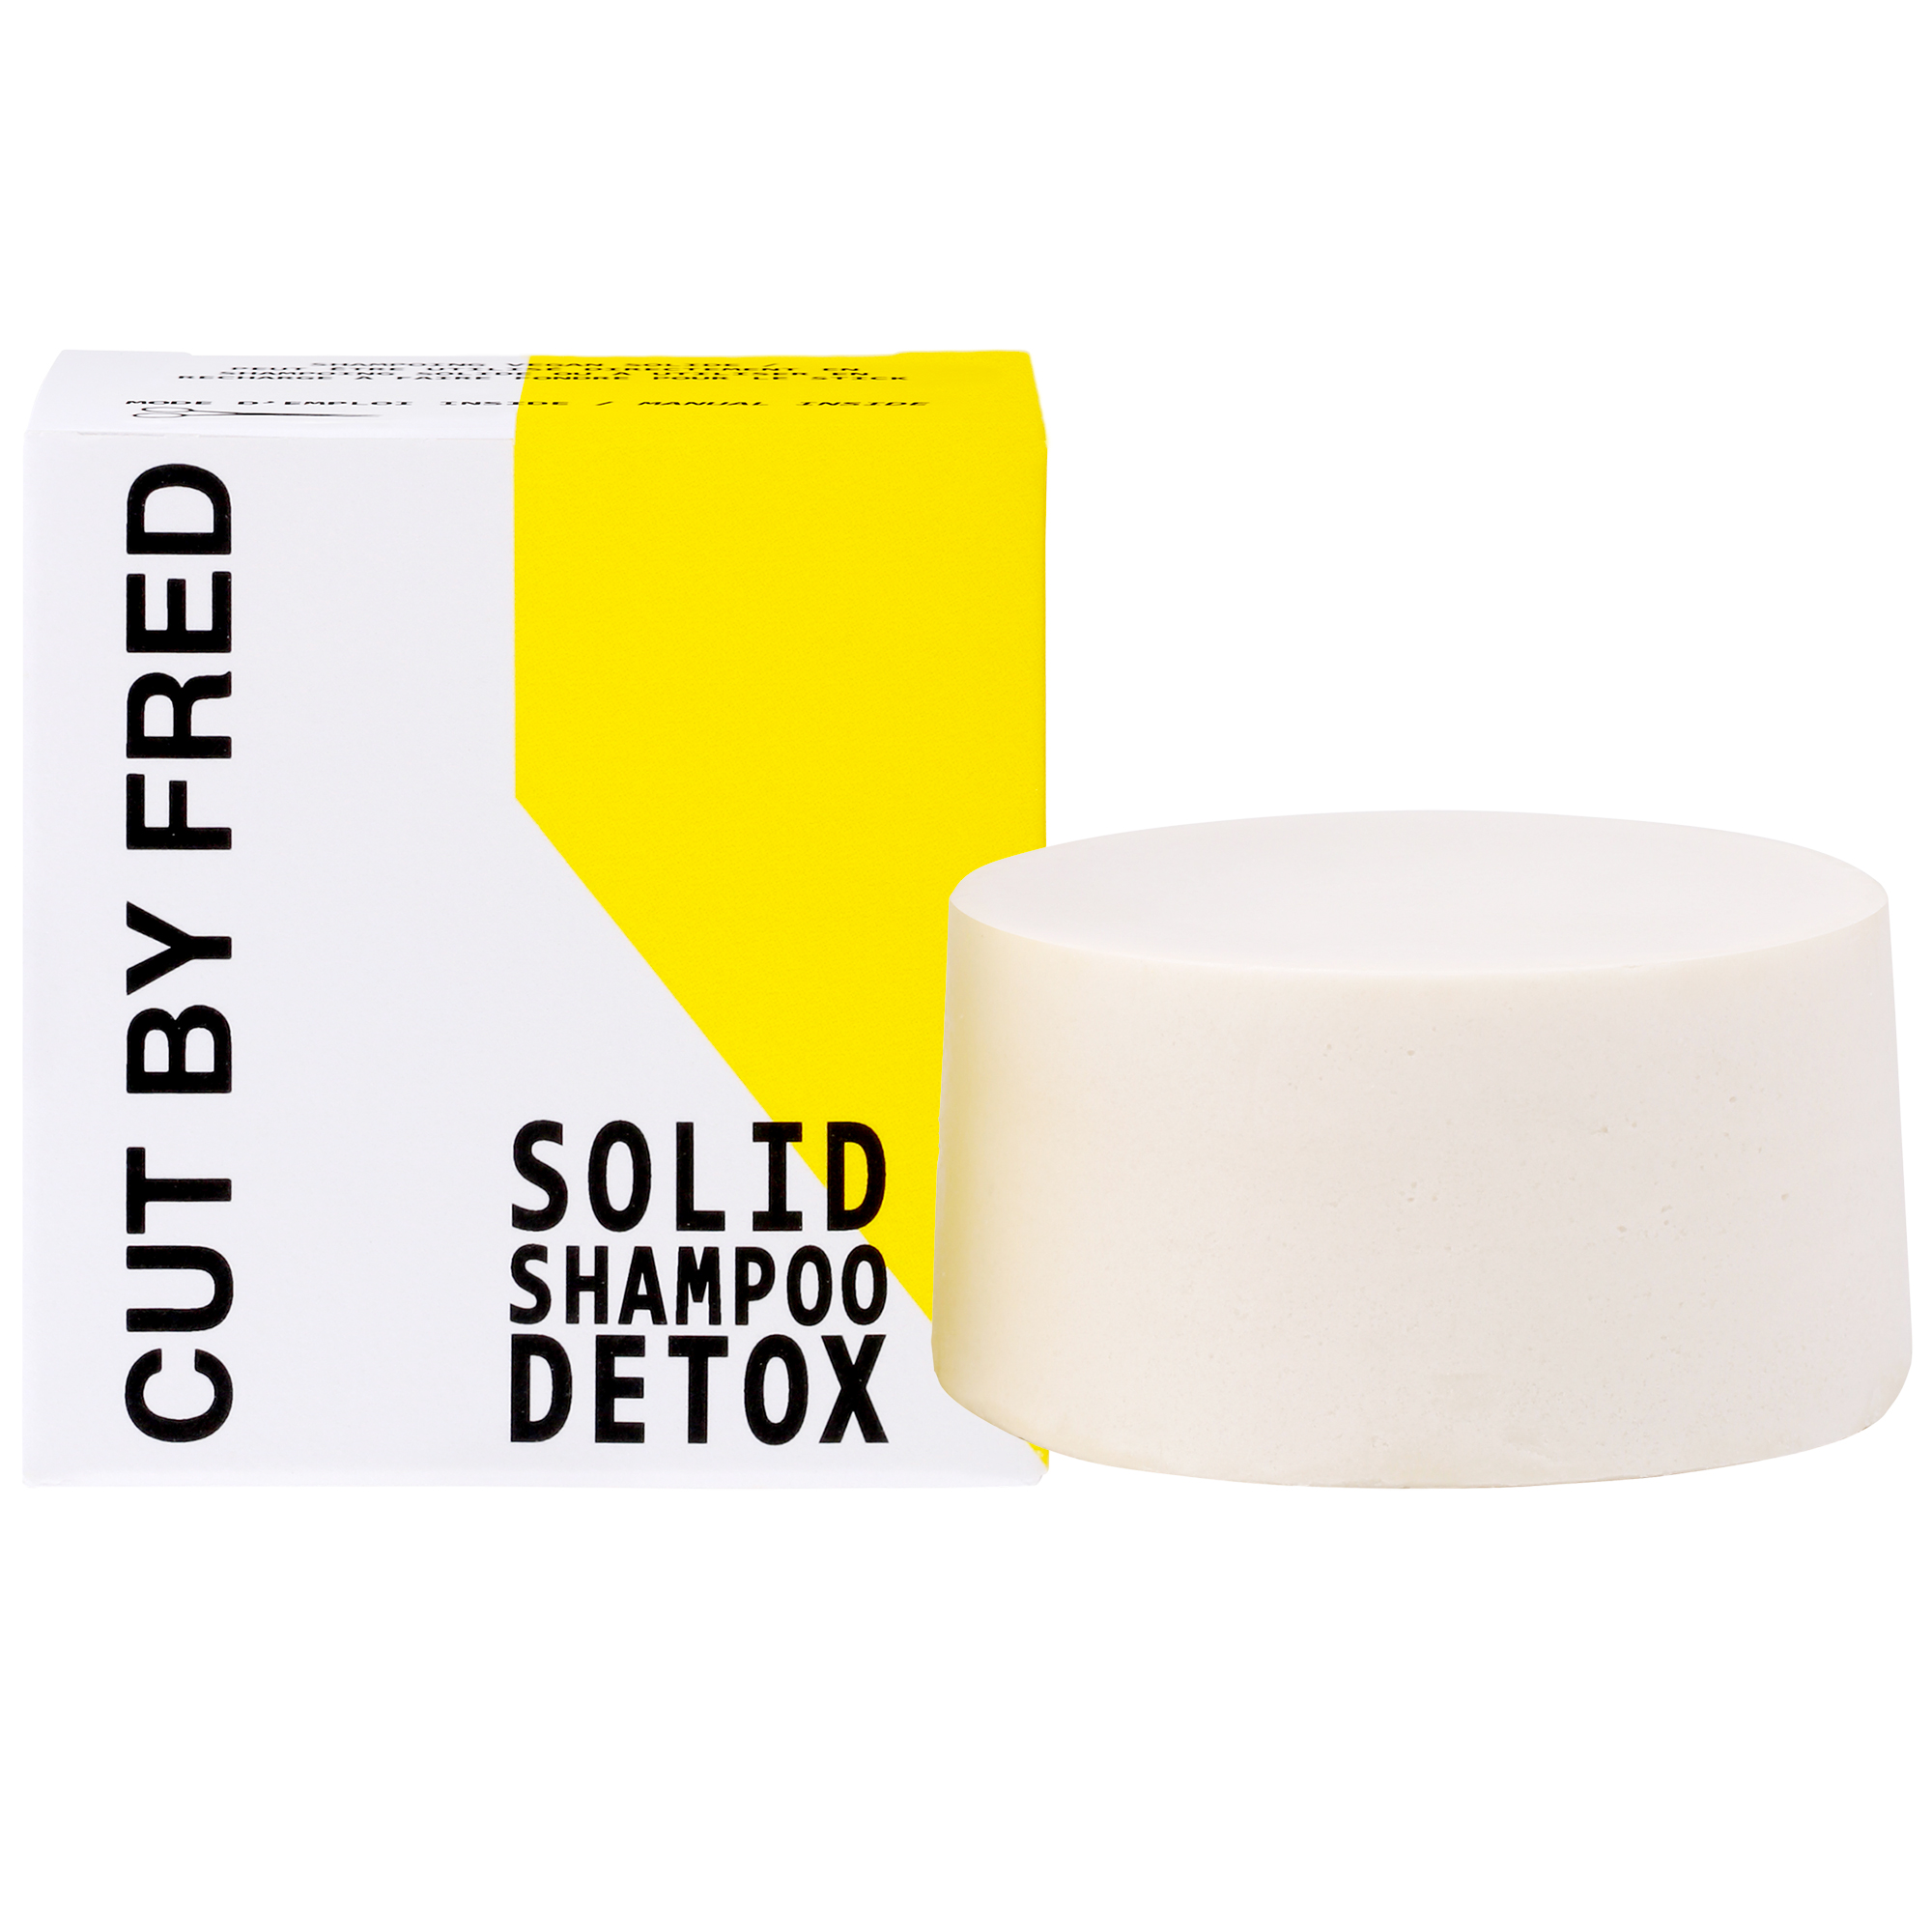 Solid Shampoo Detox Cut by Fred 80G